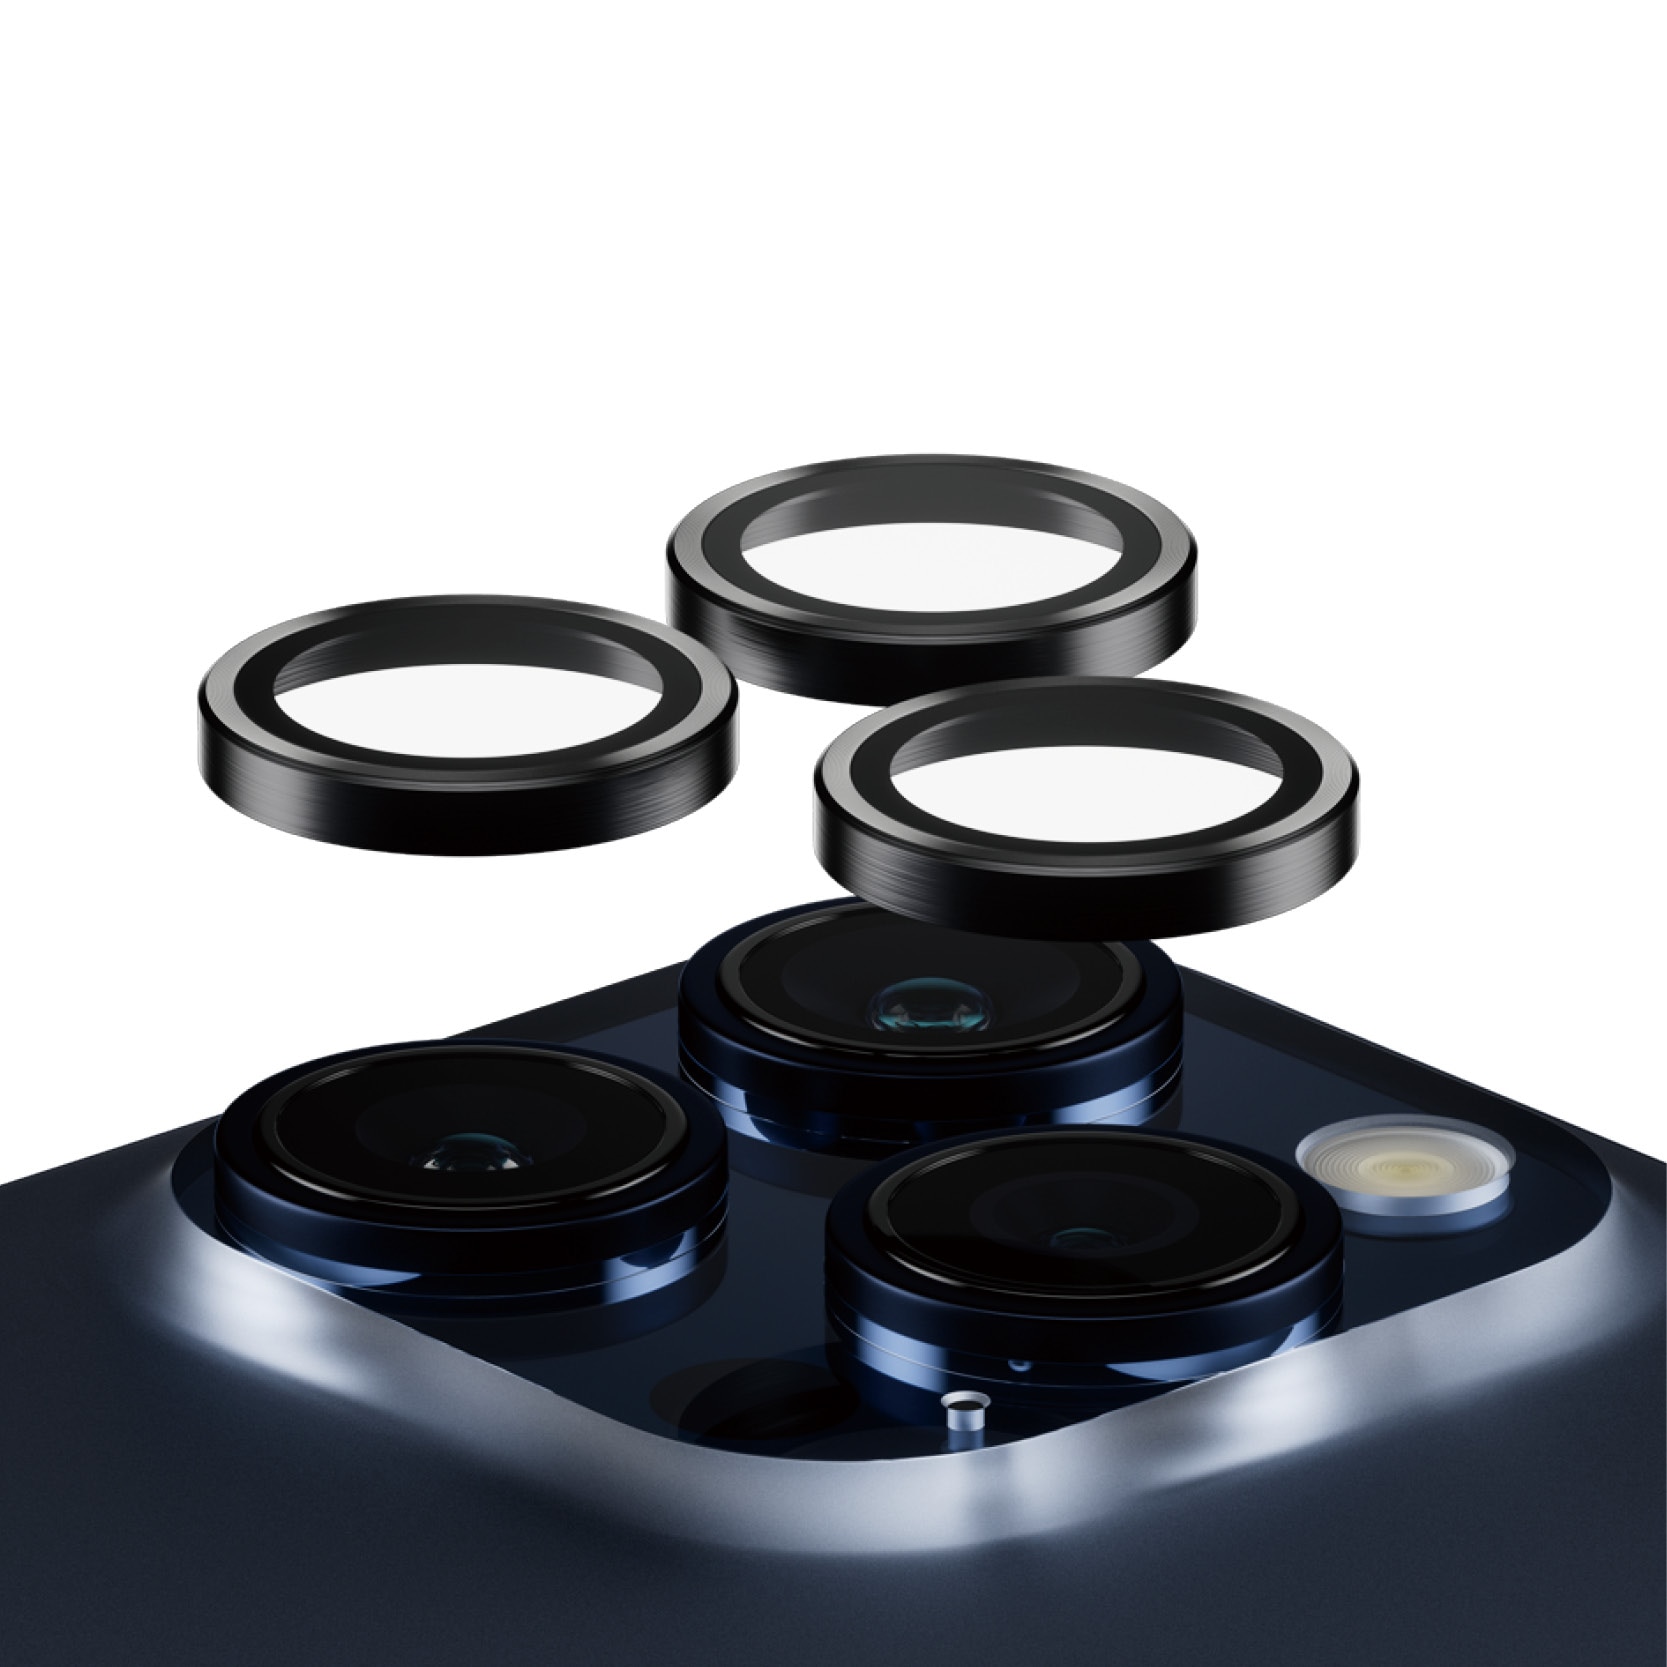 Comprar PanzerGlass PicturePerfect Protector lentes cámara iPhone